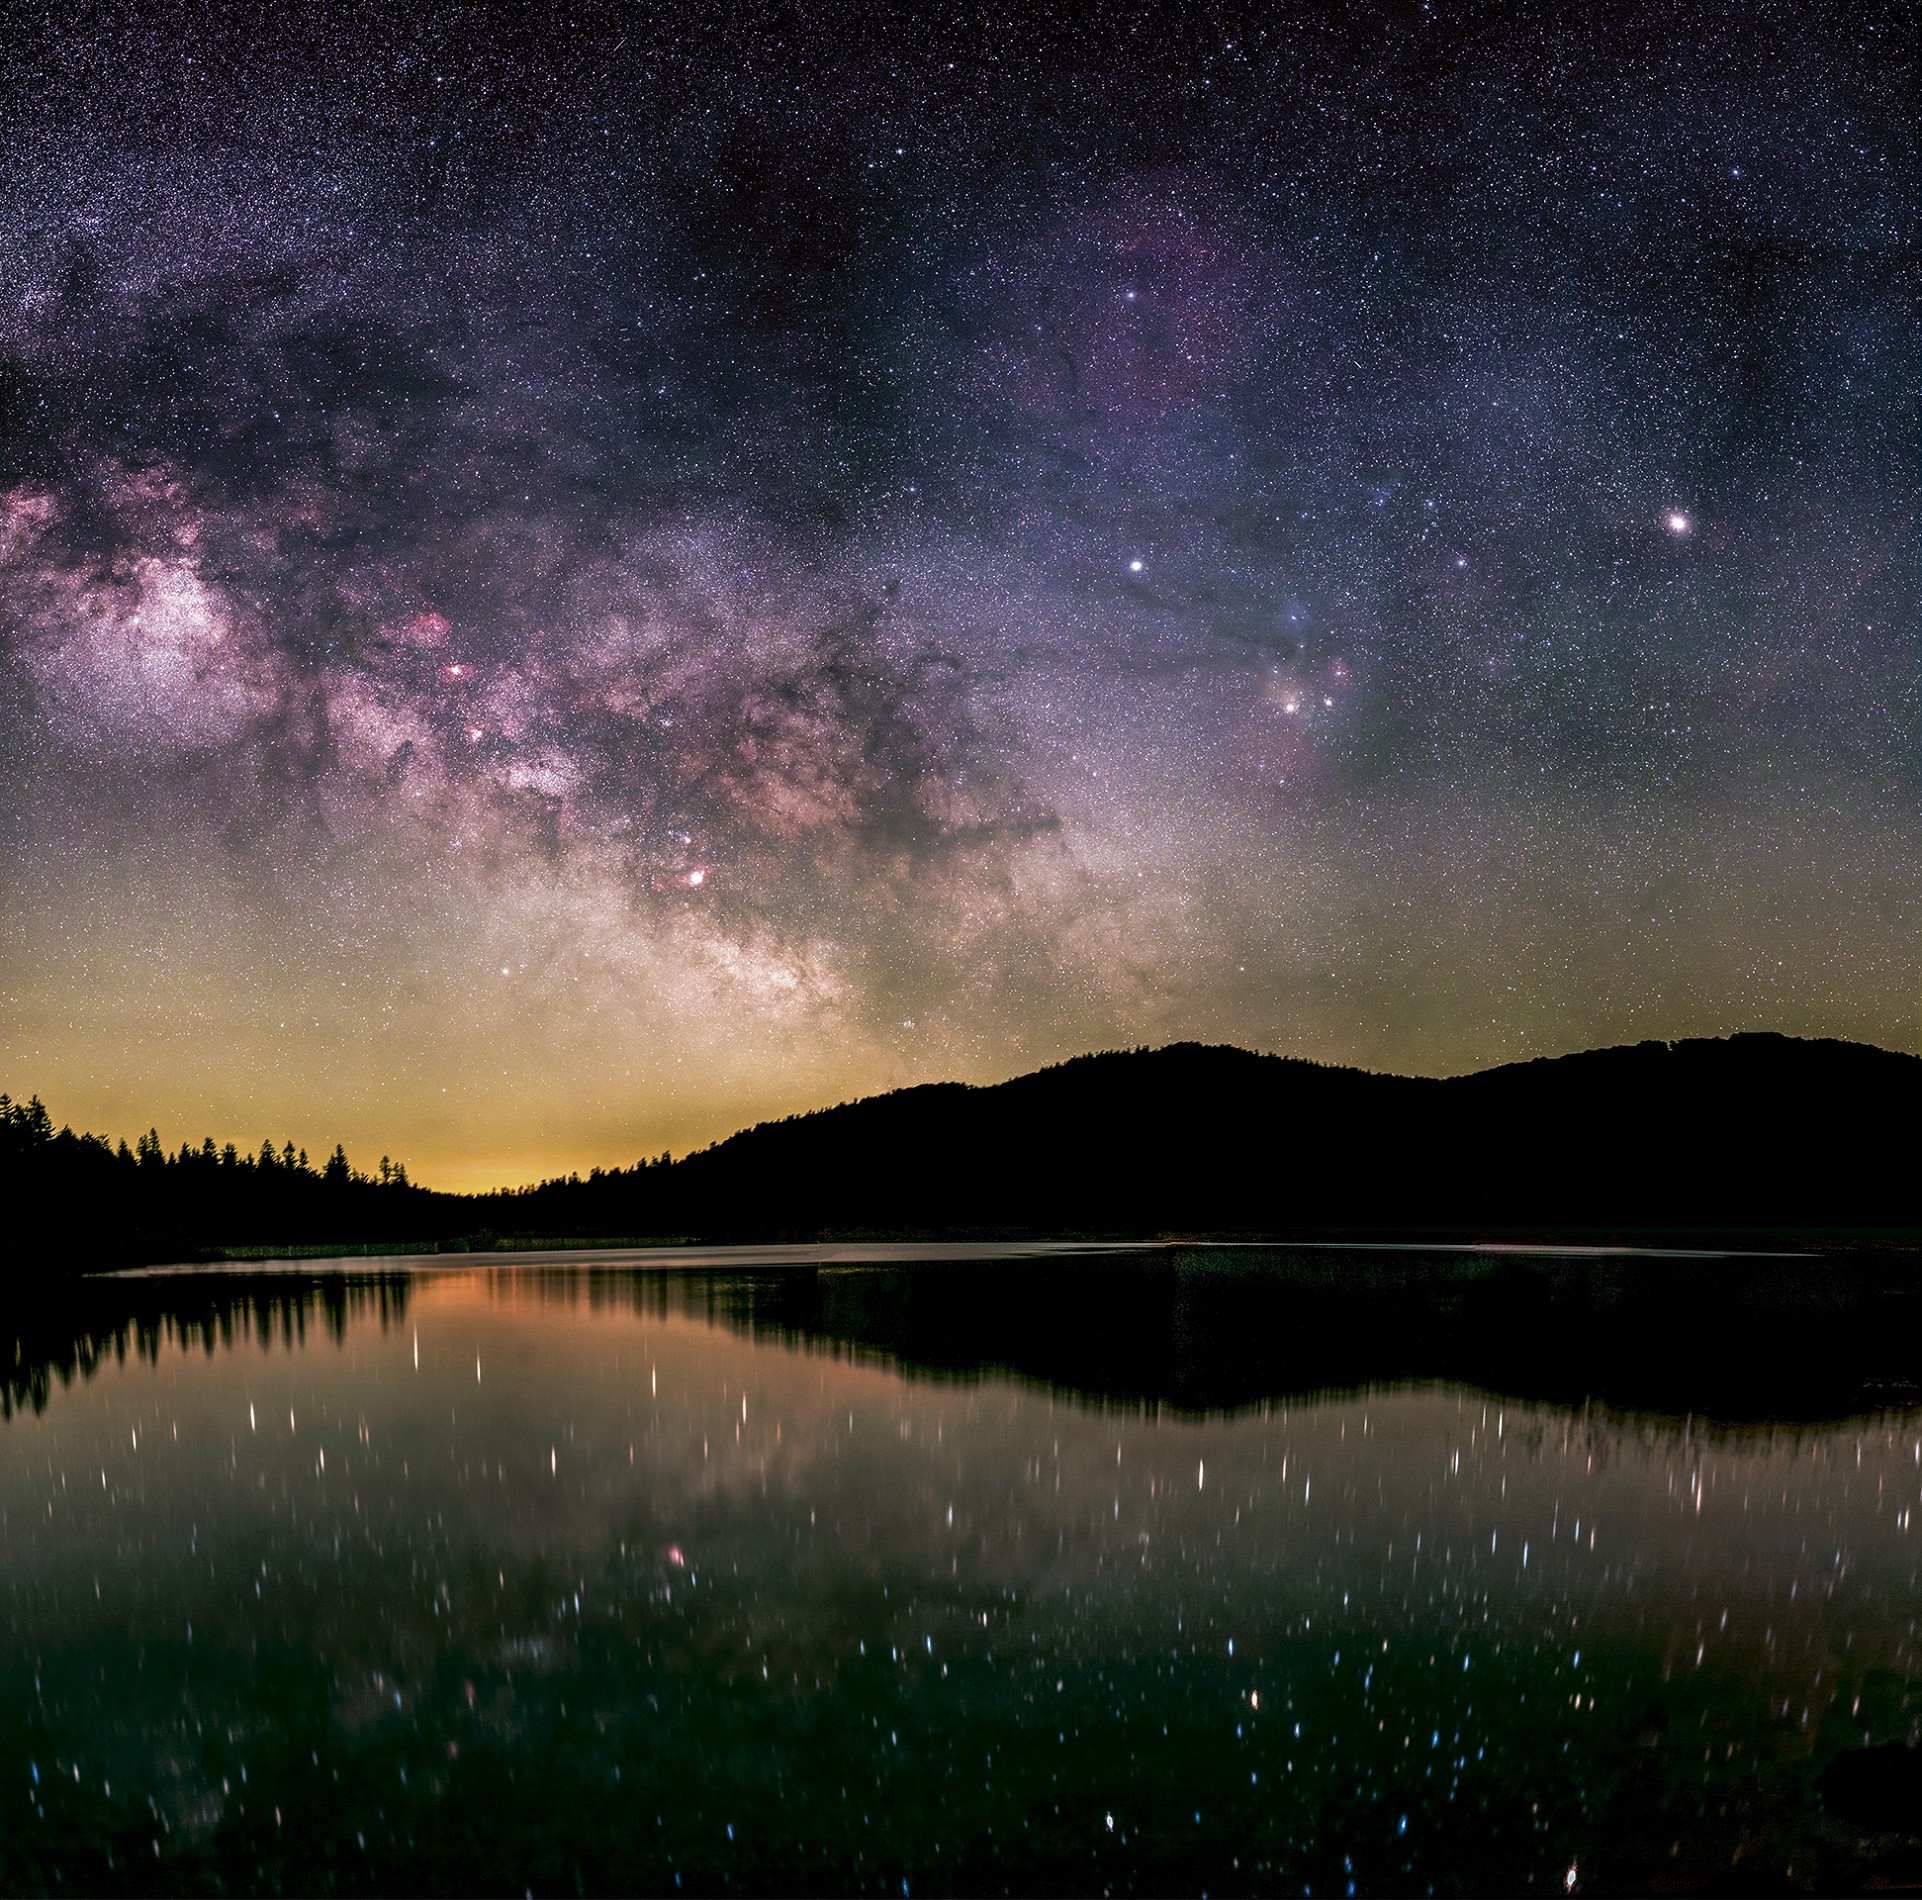 Un astrophotographe transforme ses photos du ciel étoilé en vidéo